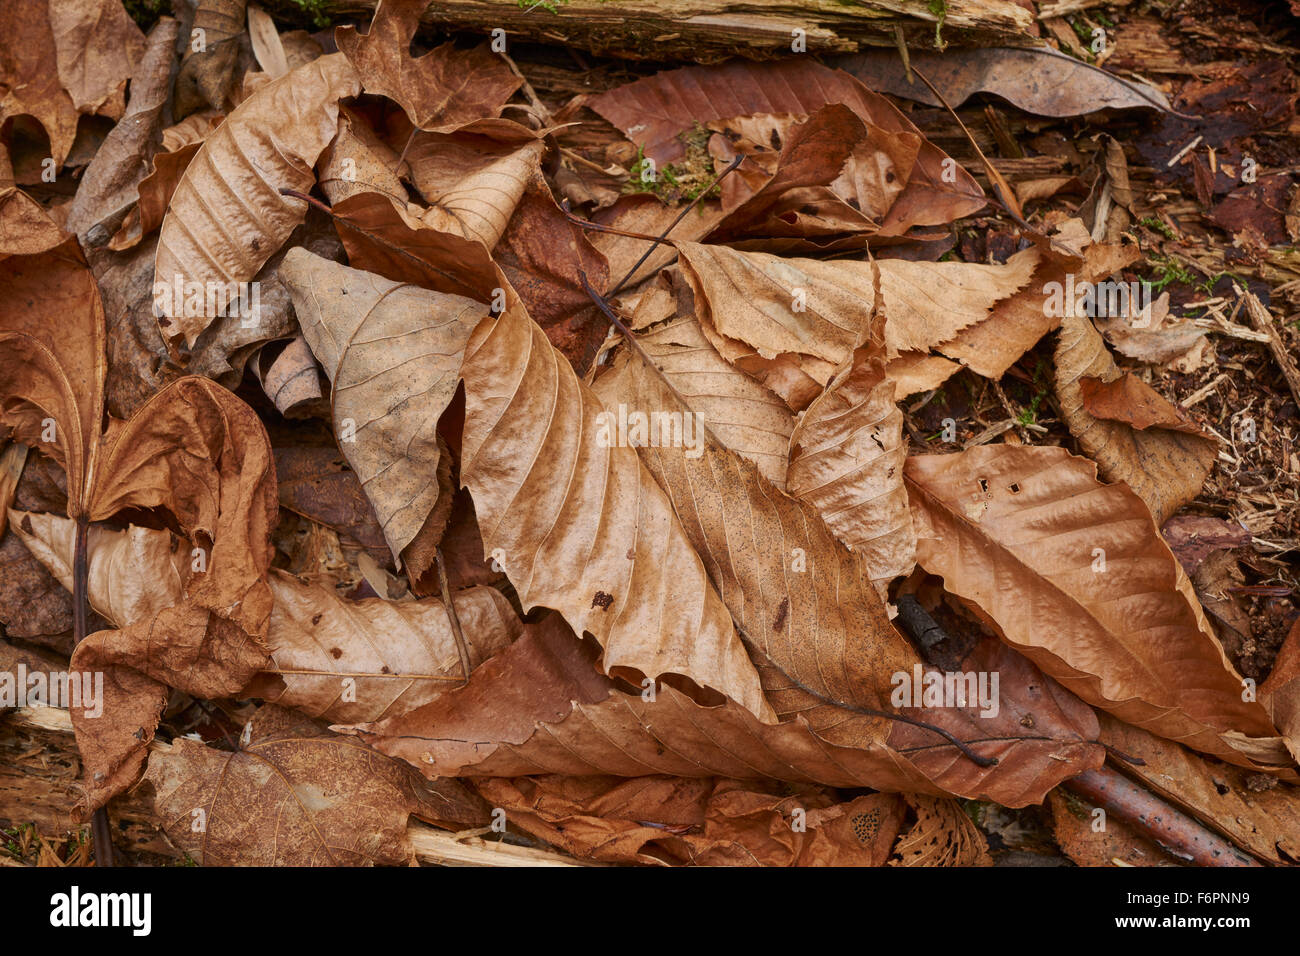 fallen leaves, late autumn, Endless Mountains, Pennsylvania, USA Stock Photo